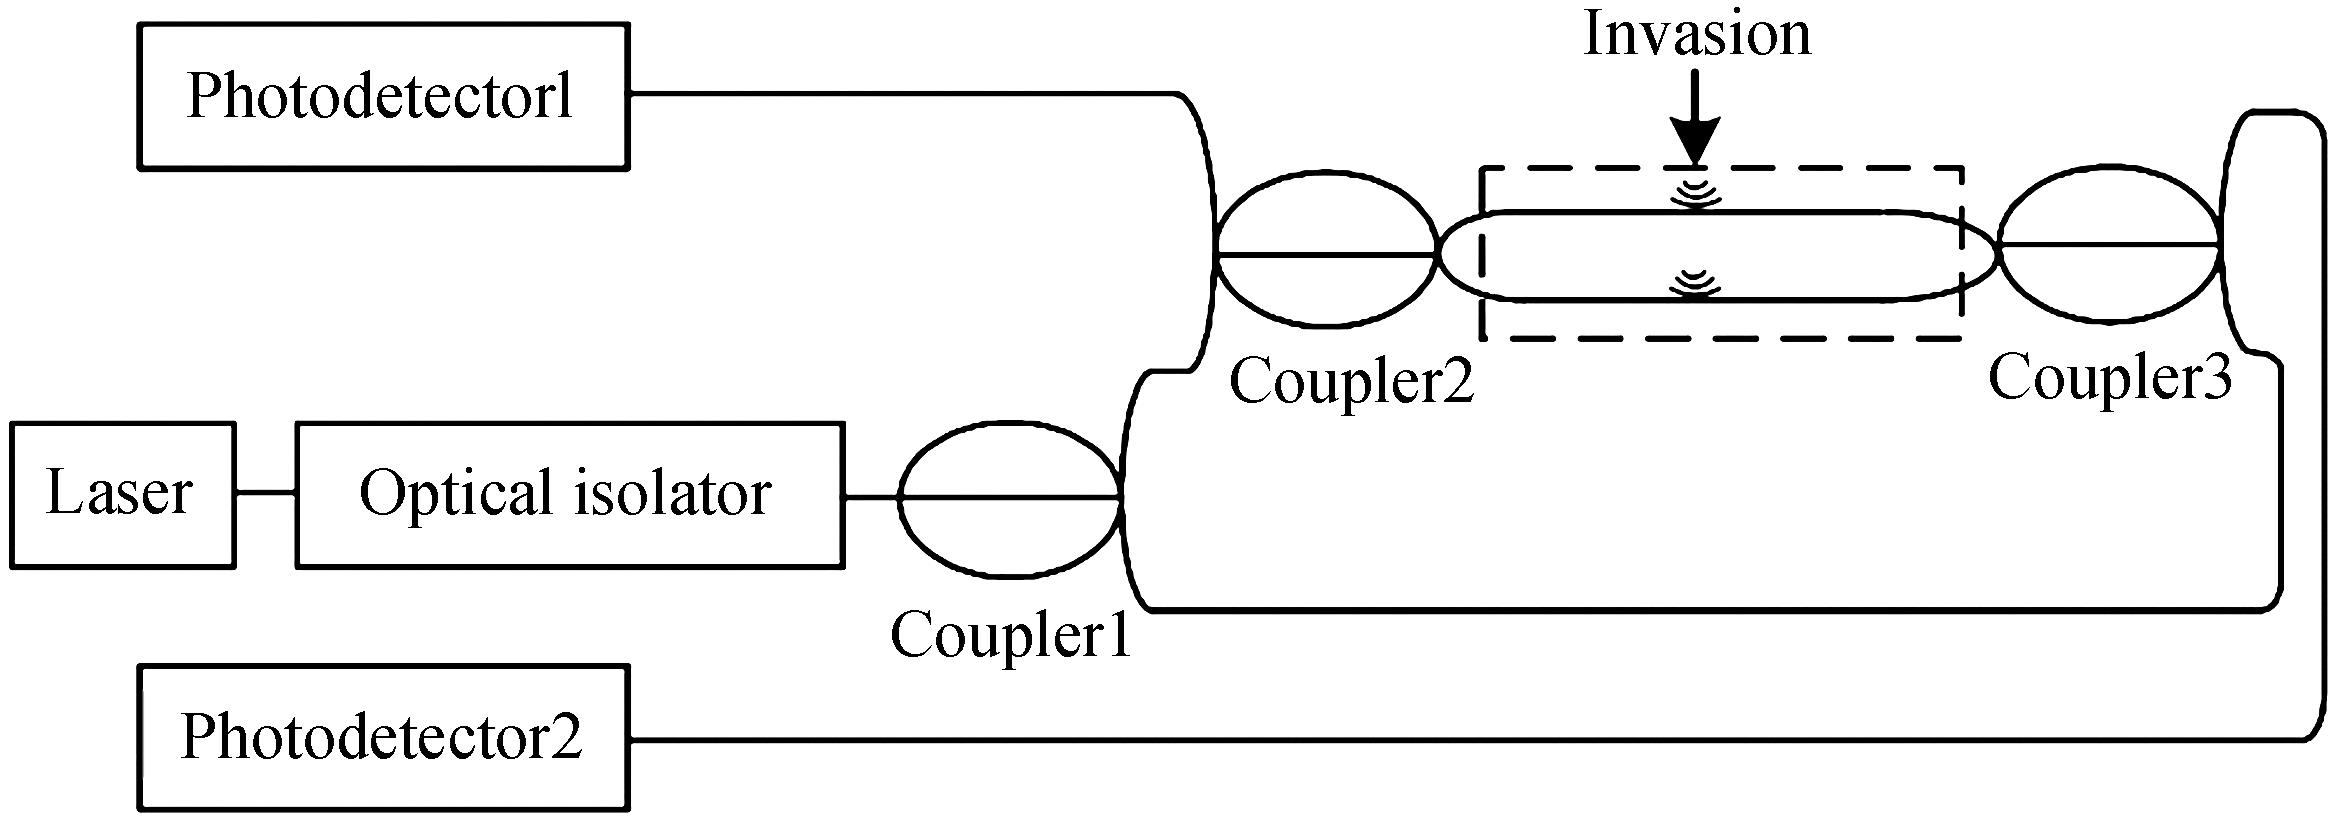 Mach-Zehnder system sensing schematic diagram